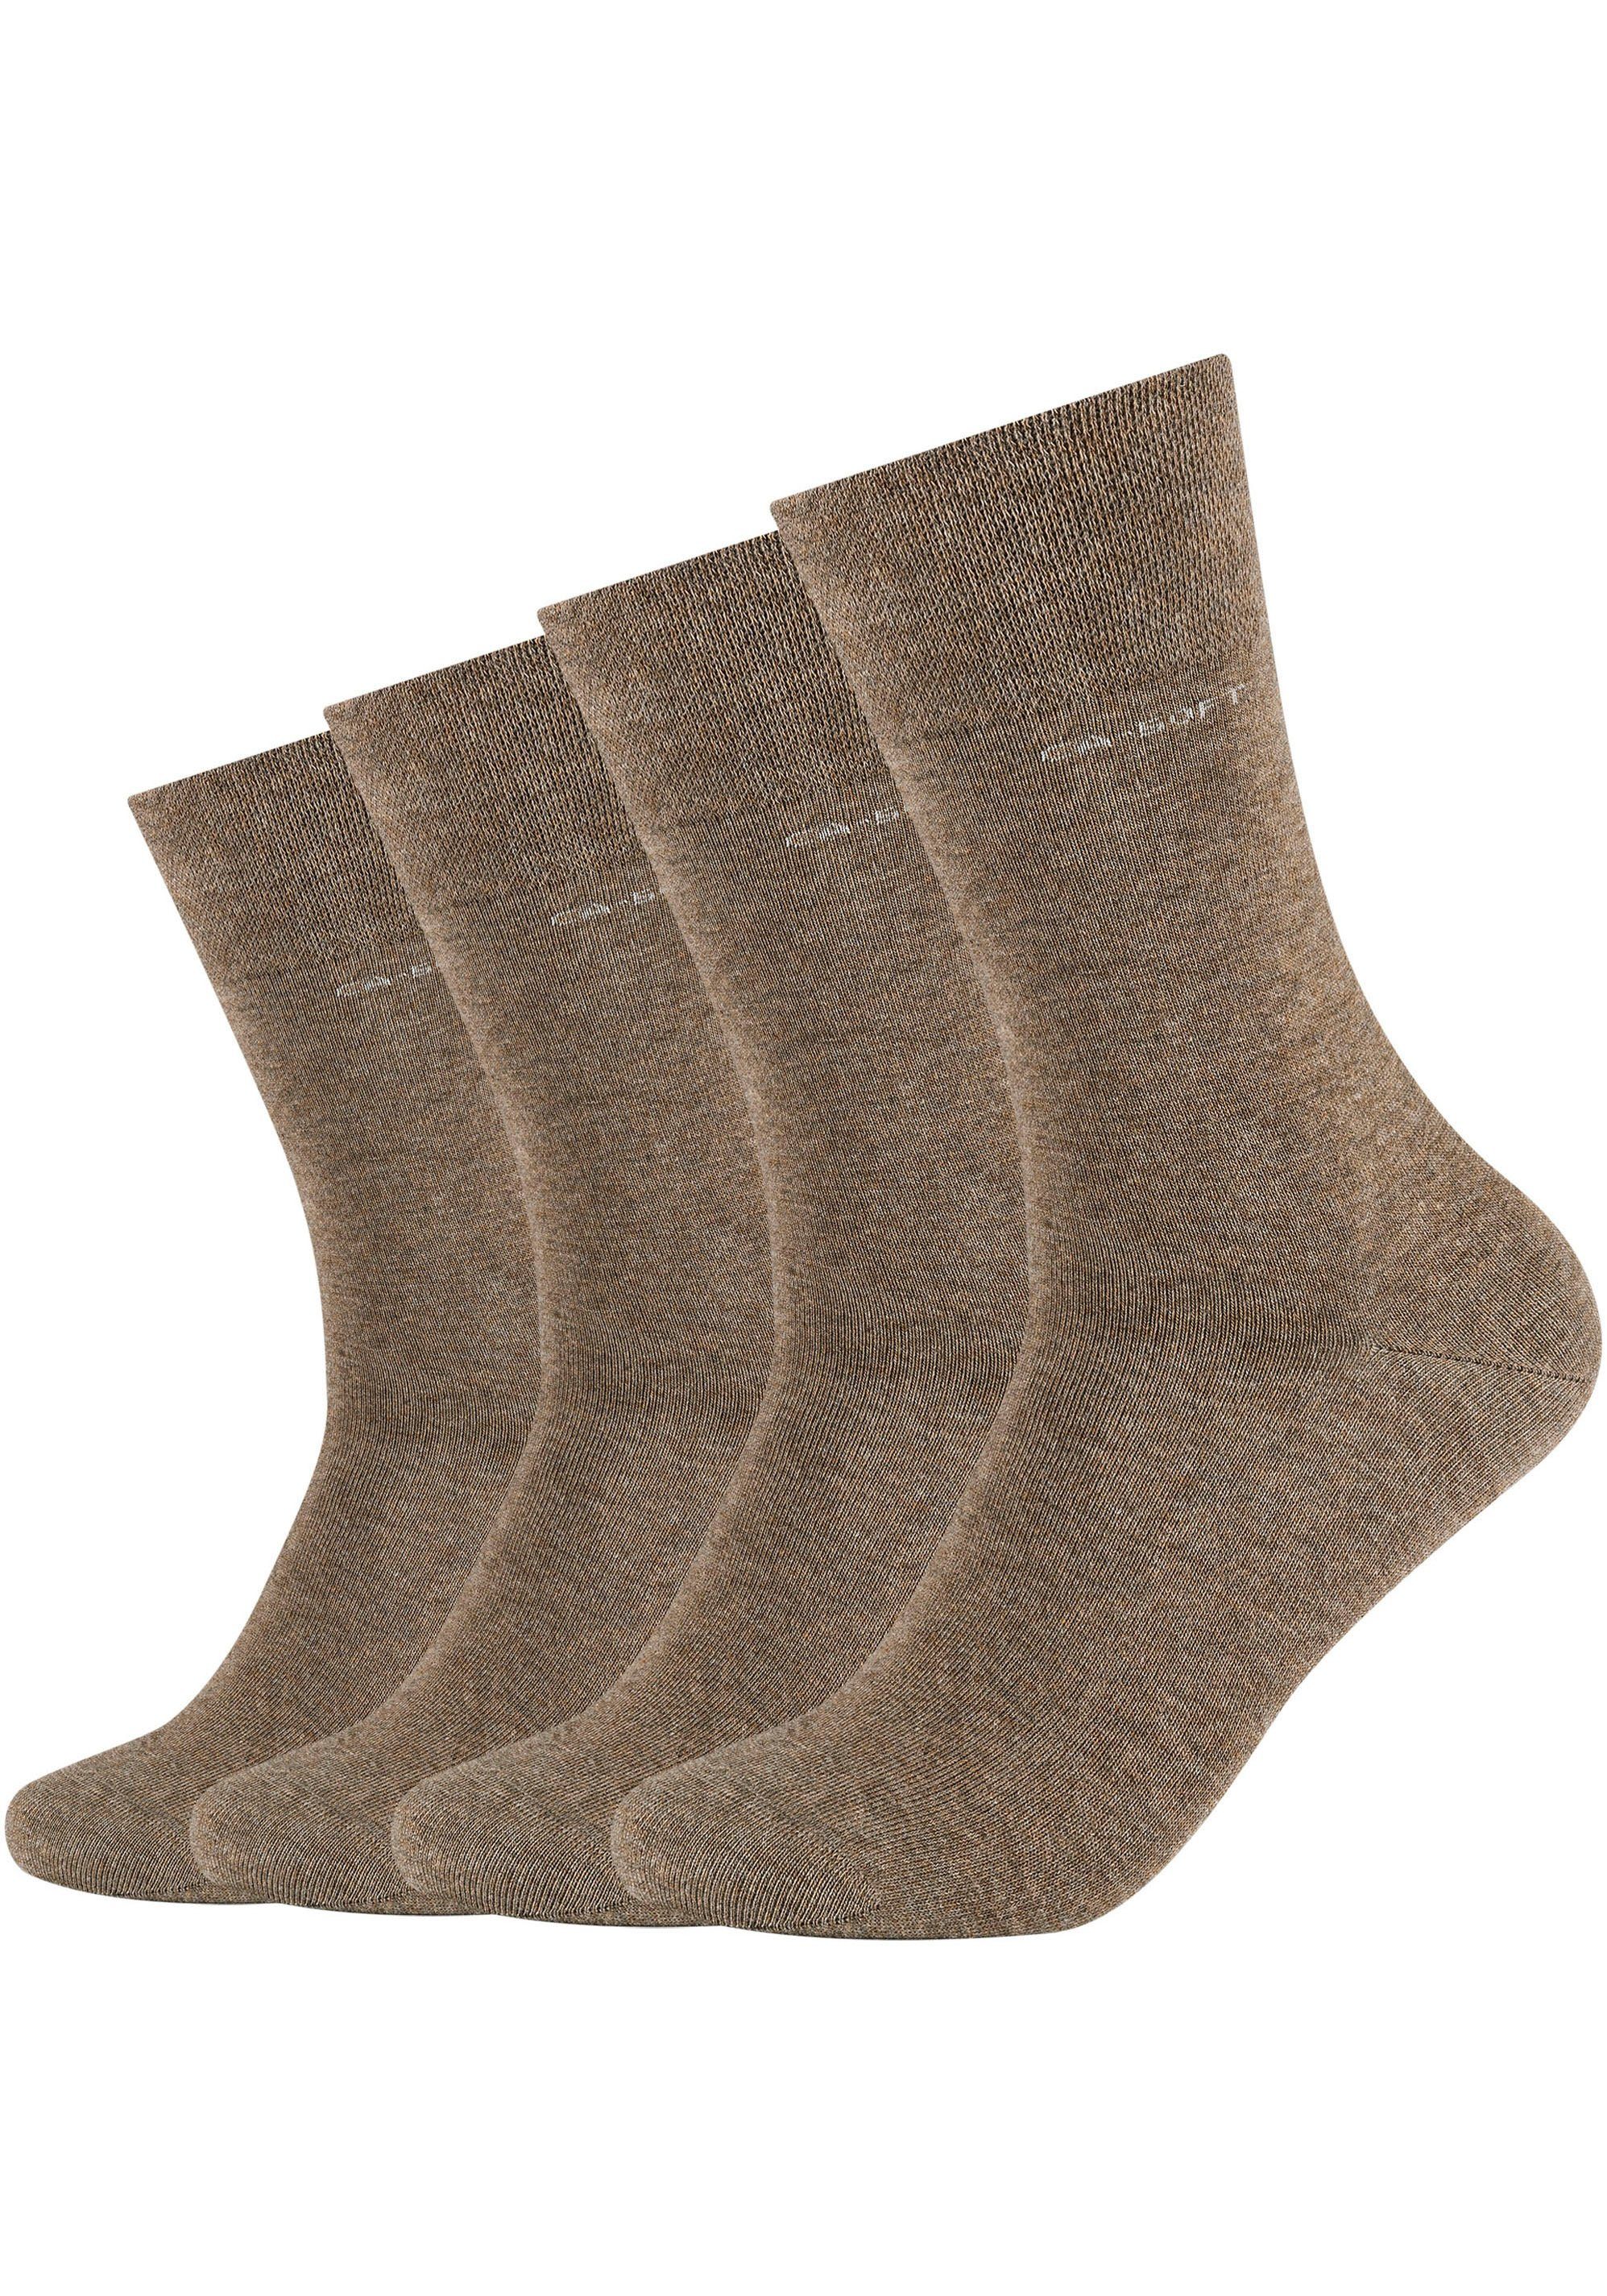 Socken 4-Paar) camel-meliert Fersen- und (Packung, Camano Zehenbereich Mit verstärktem